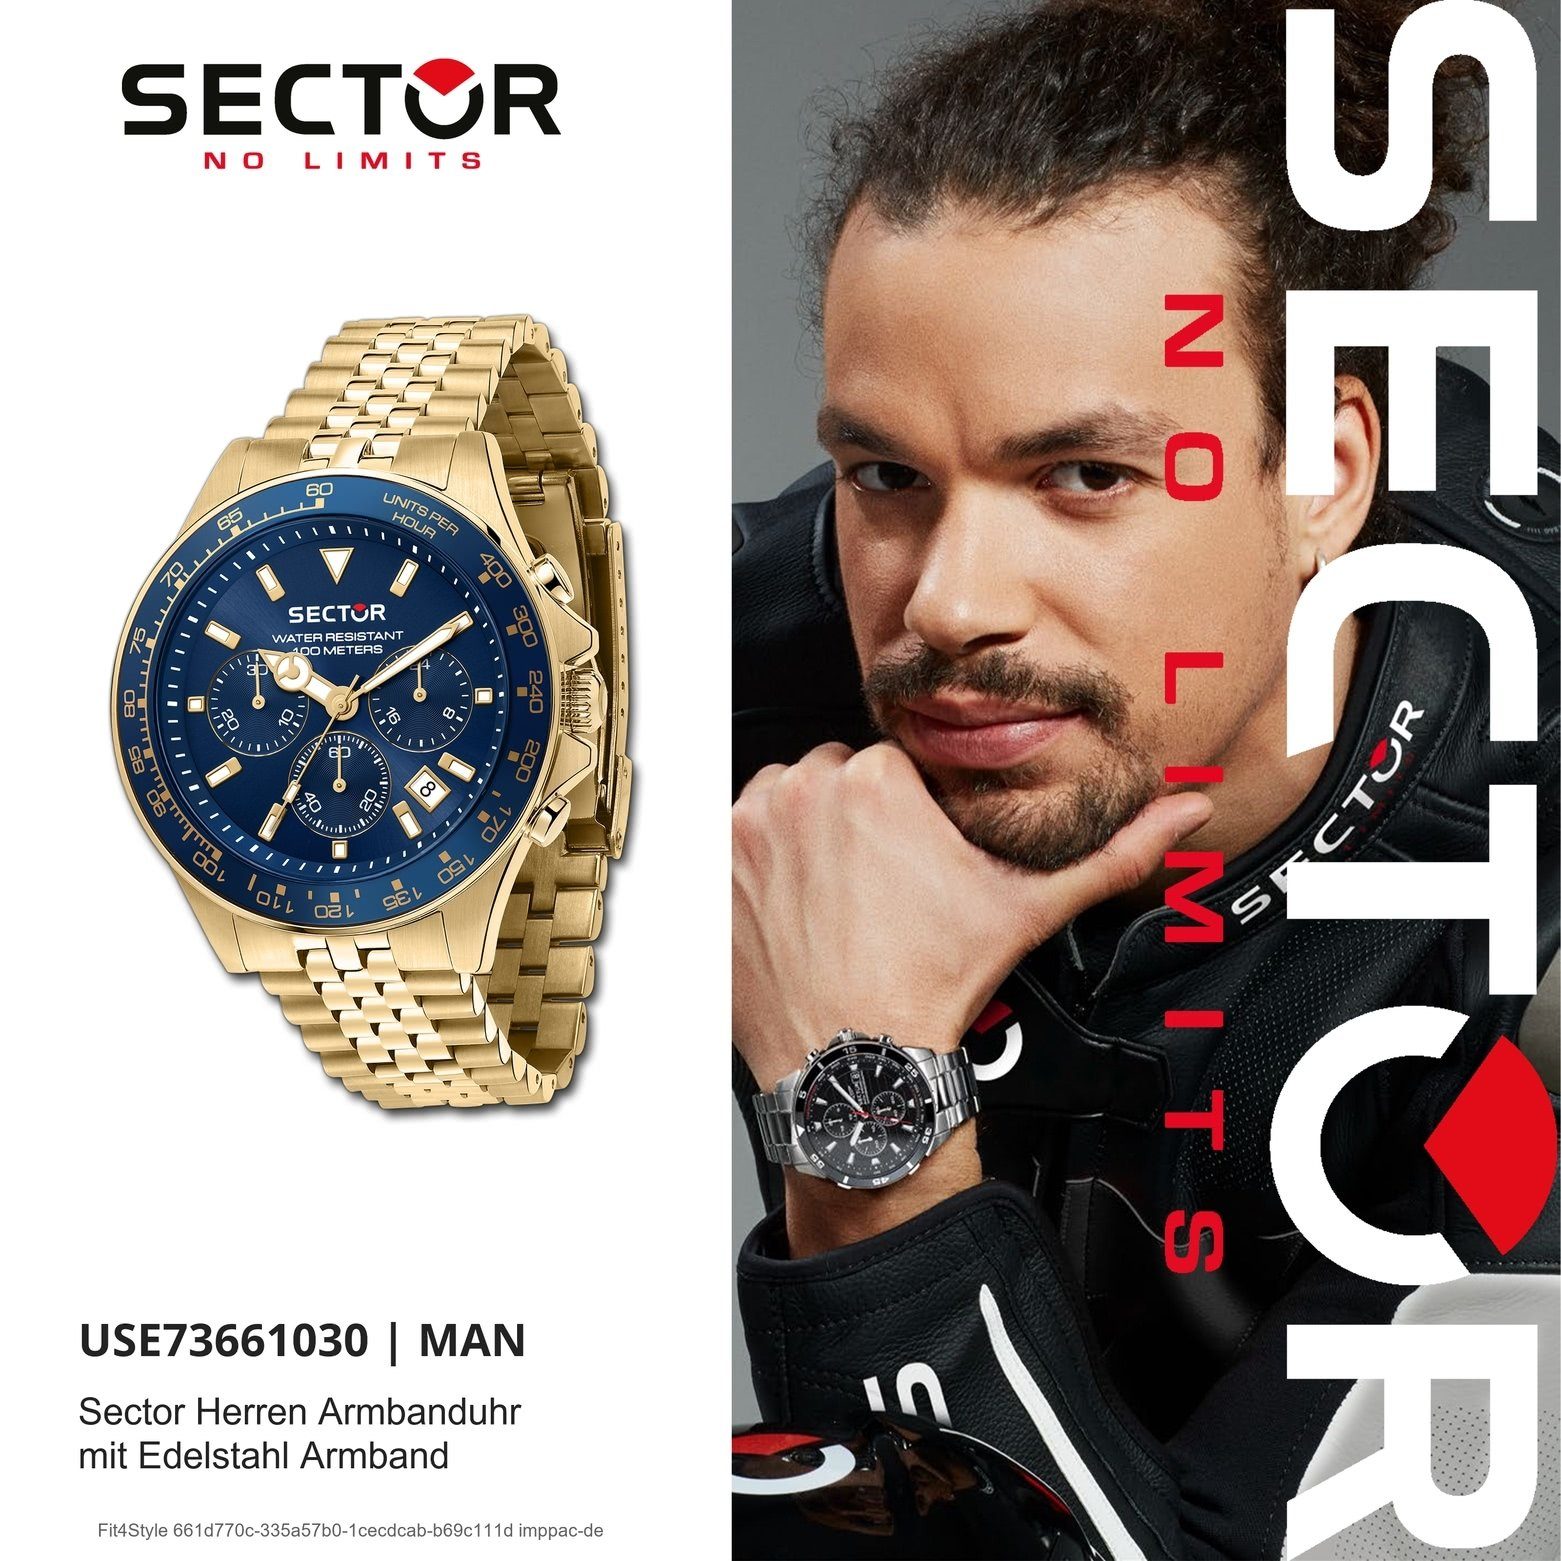 Sector Sector Herren Chrono, Fashion Chronograph (43mm), Edelstahlarmband groß rund, gold, Armbanduhr Armbanduhr Herren